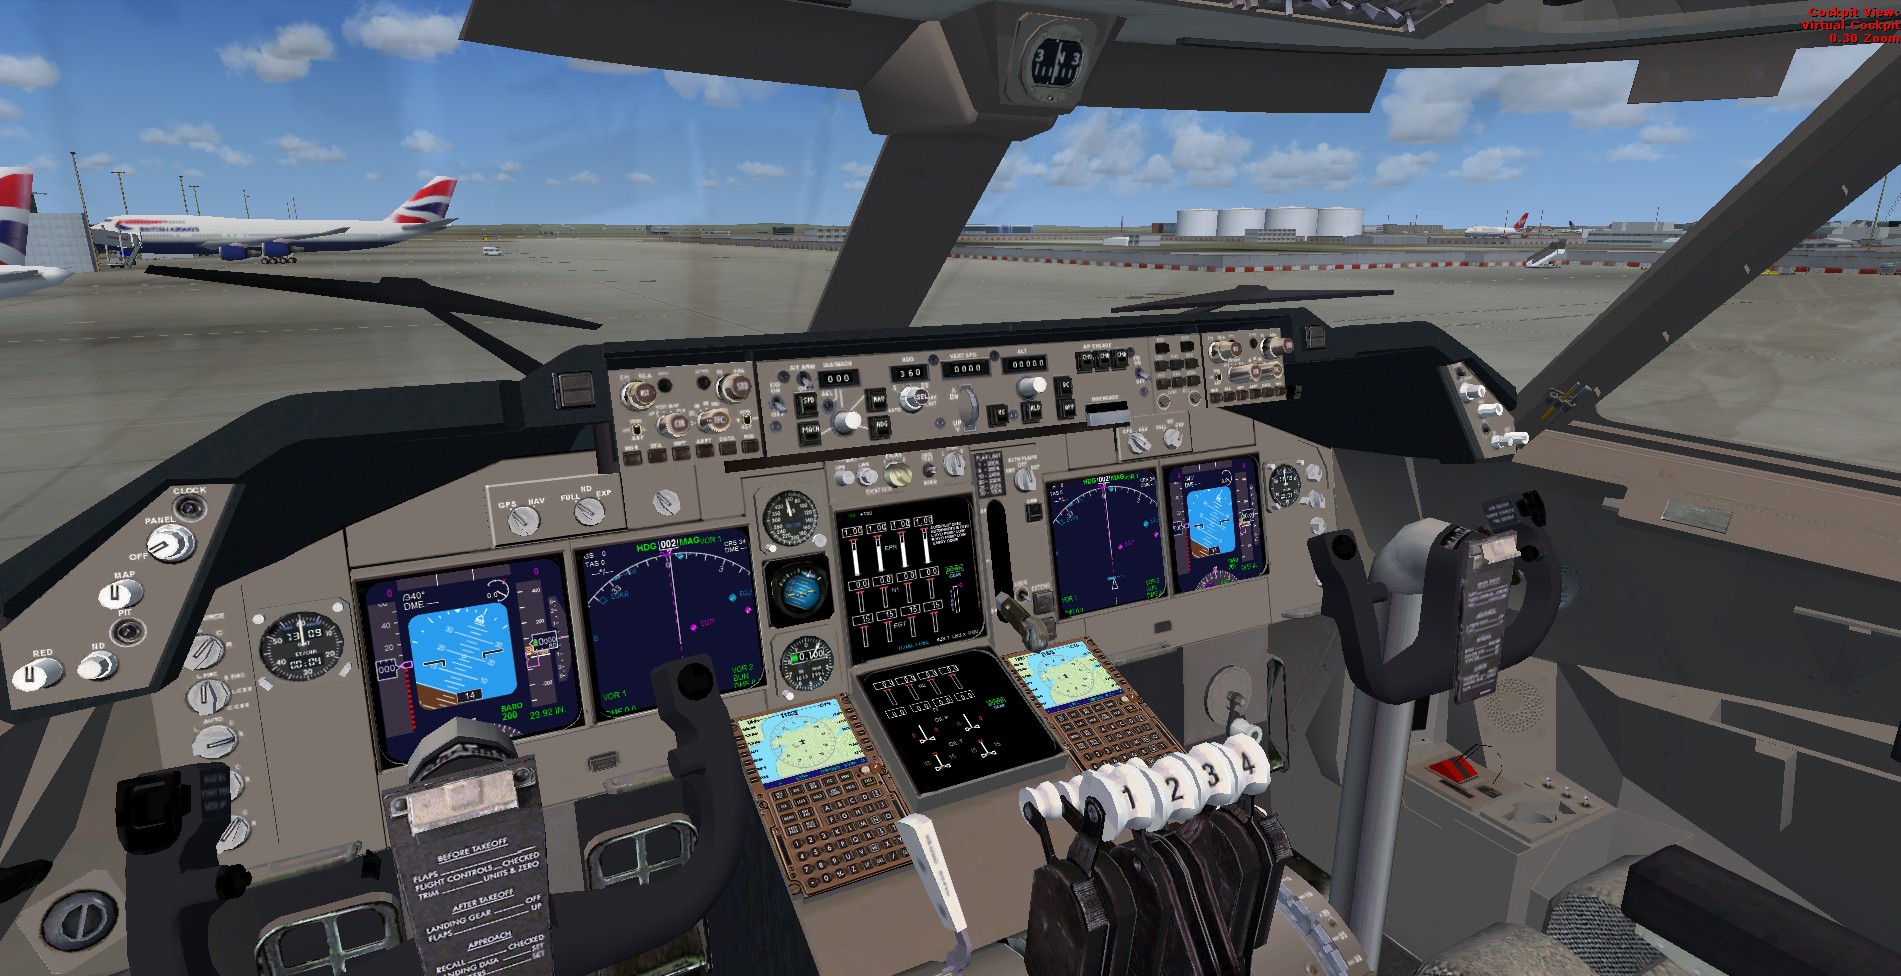 Flight simulator 2002 windows 10